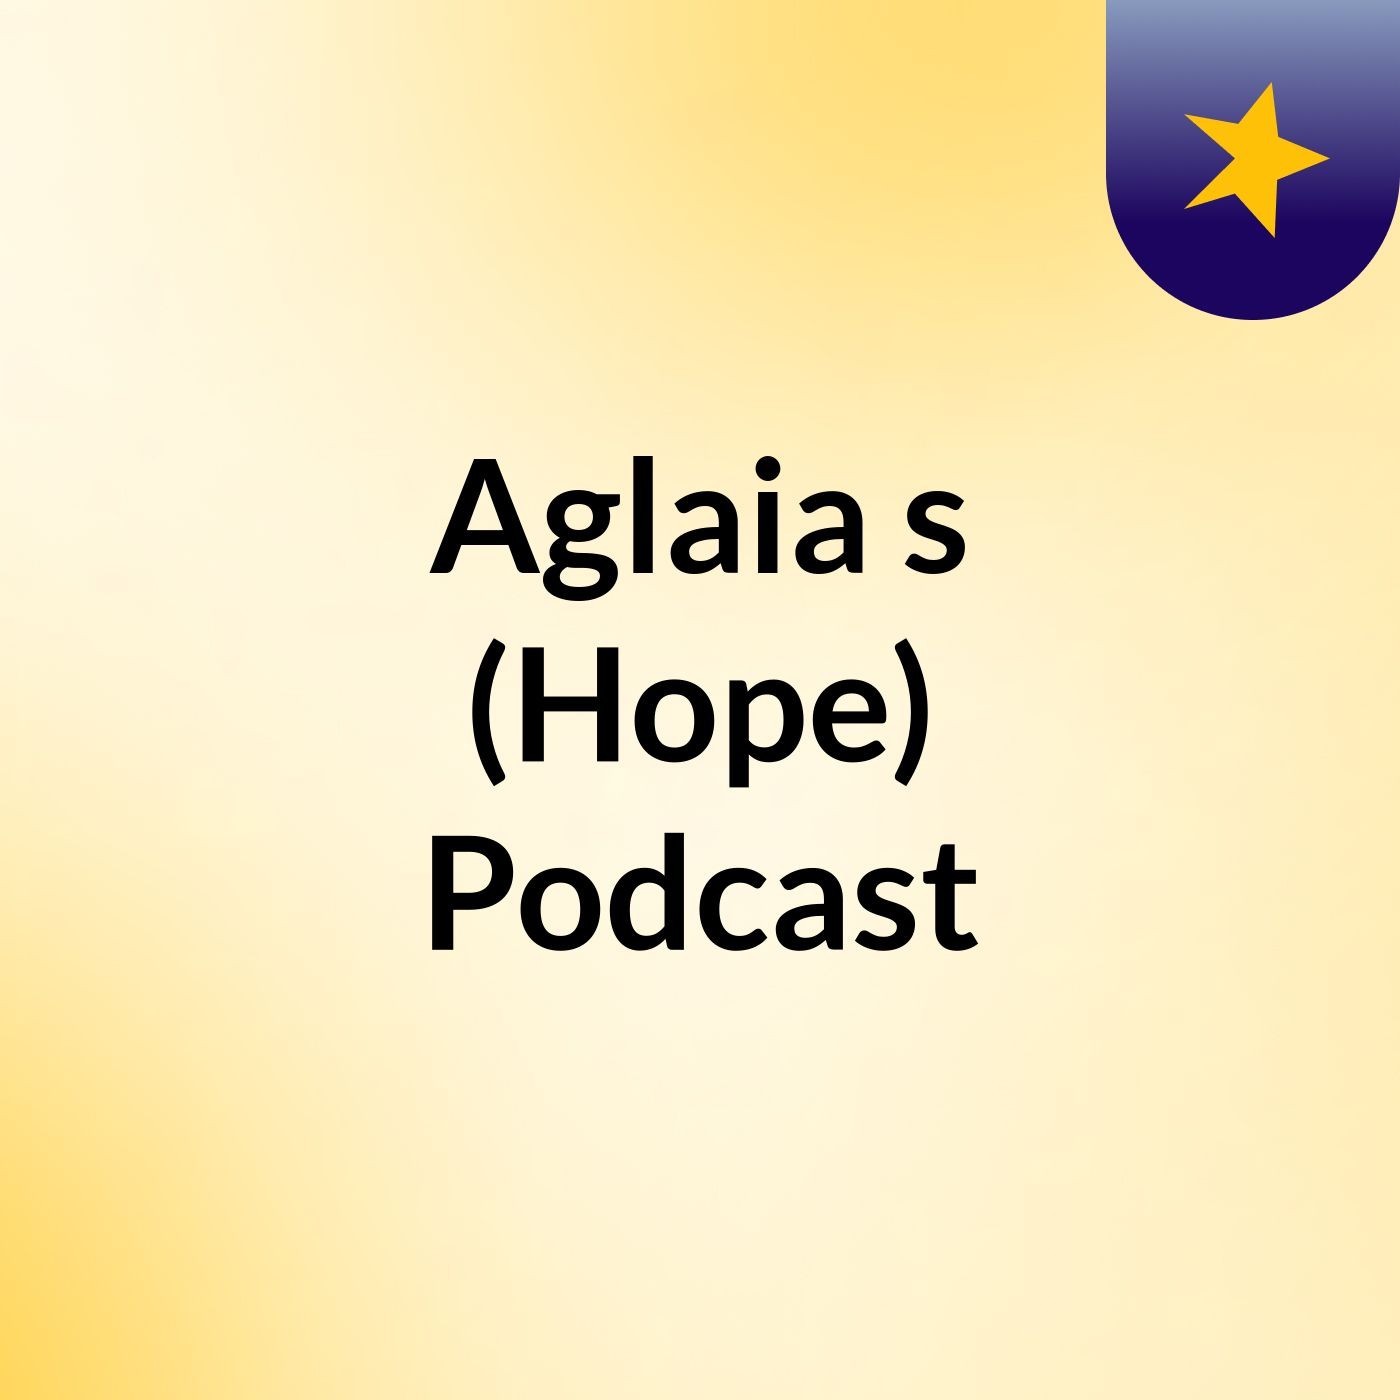 Aglaia's (Hope) Podcast